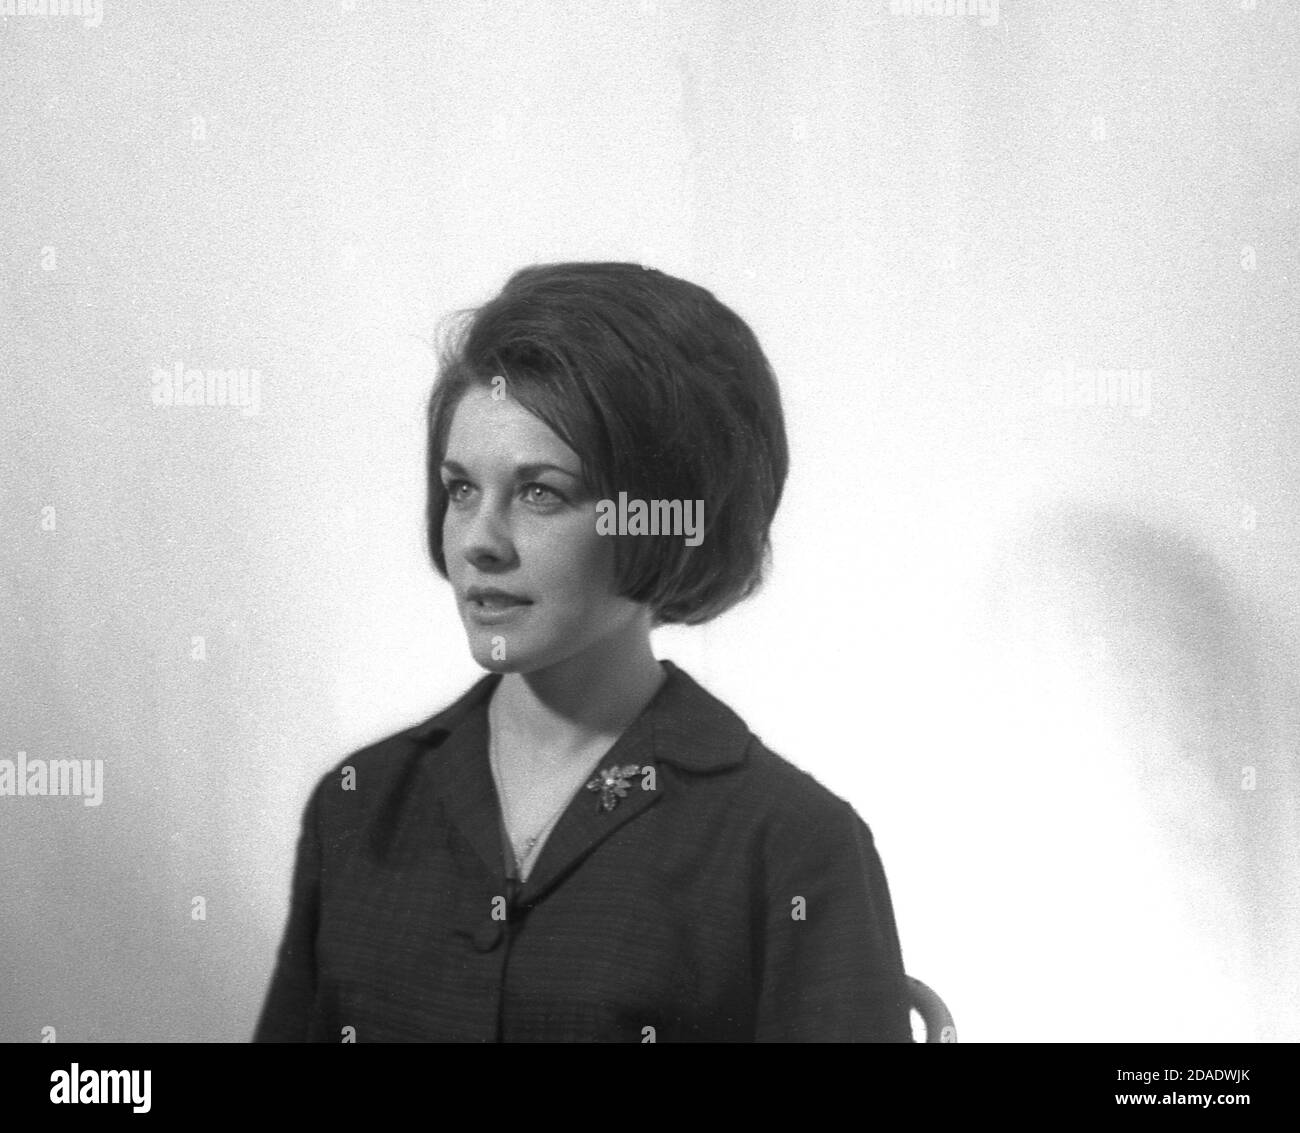 1960, histórico, retrato de estudio de una joven dama mostrando el uno de los peinados femeninos del día, Inglaterra, Reino Unido. Foto de stock